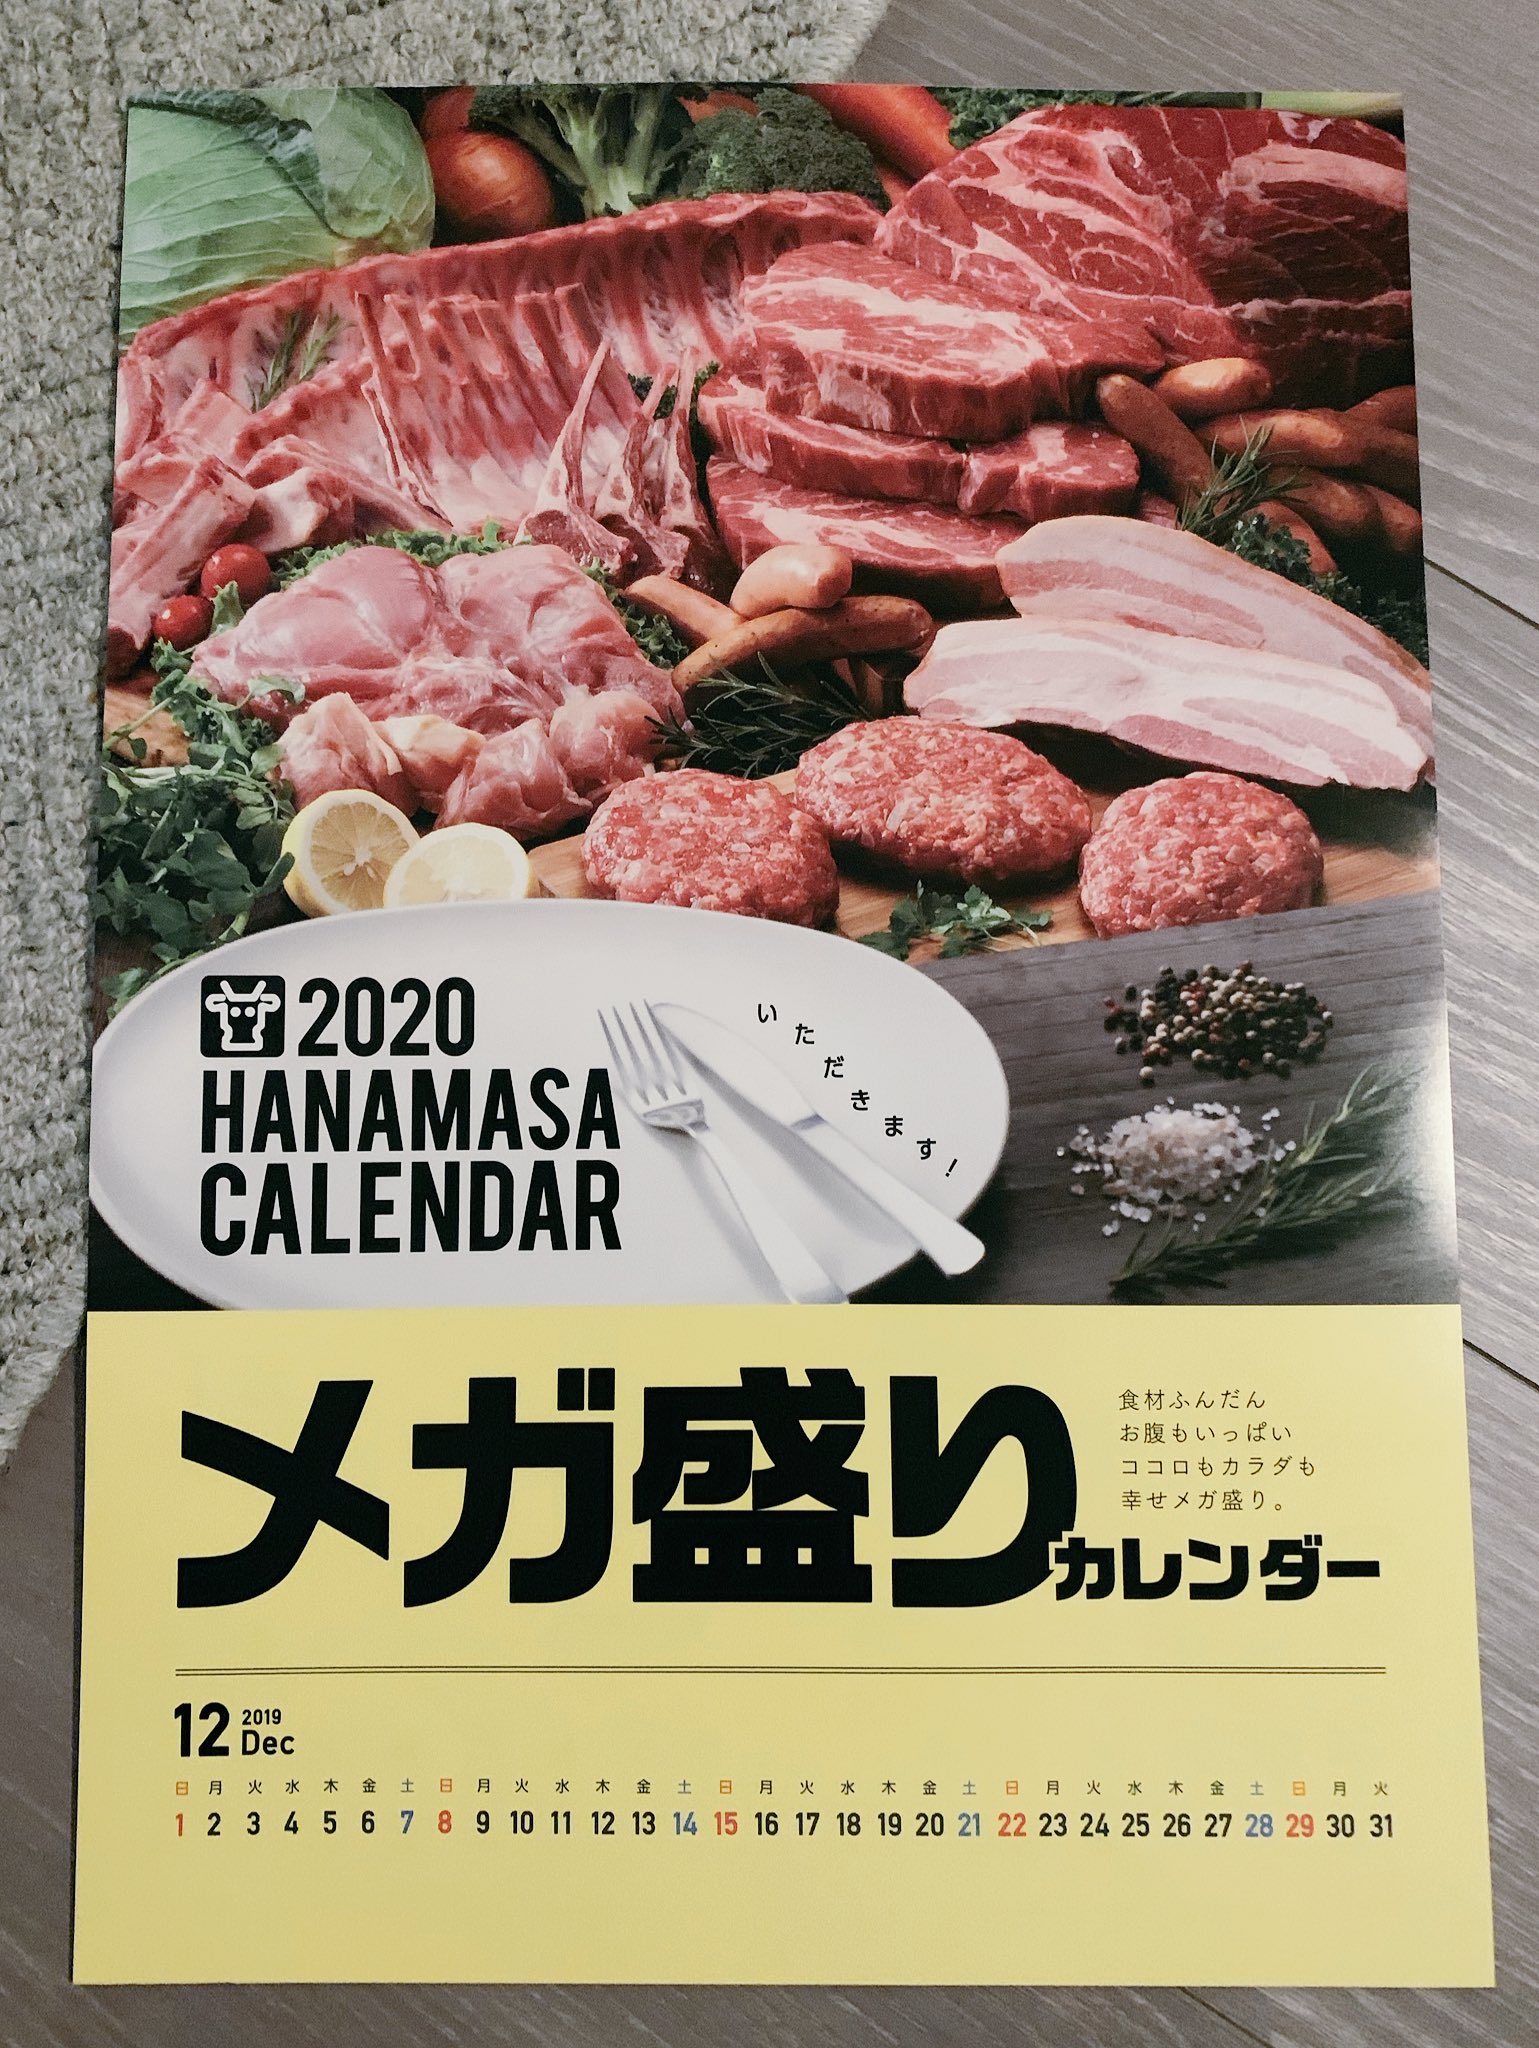 食欲が止まらなくなっちゃうw肉のハナマサ『2020 HANAMASAカレンダー』